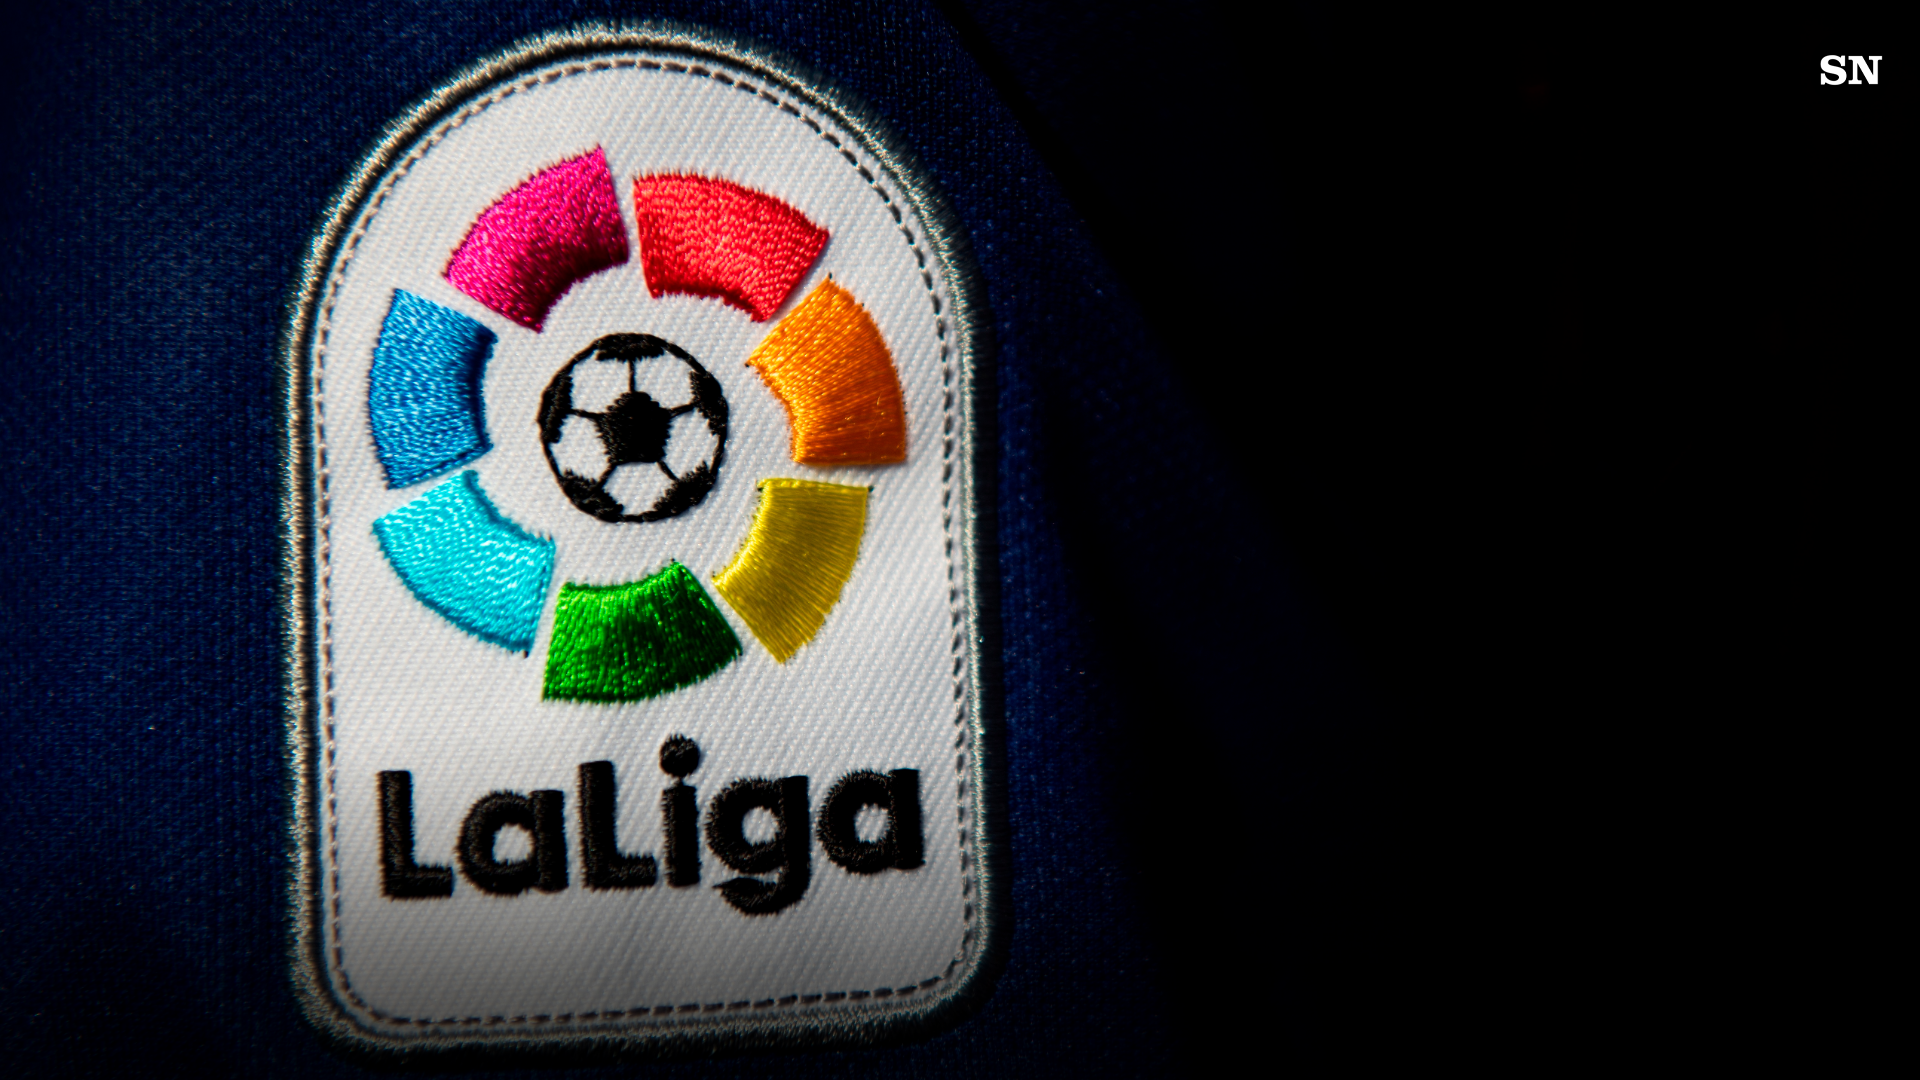 Top Skor La Liga 2022/2023 dan Jadwal Pekan Ini